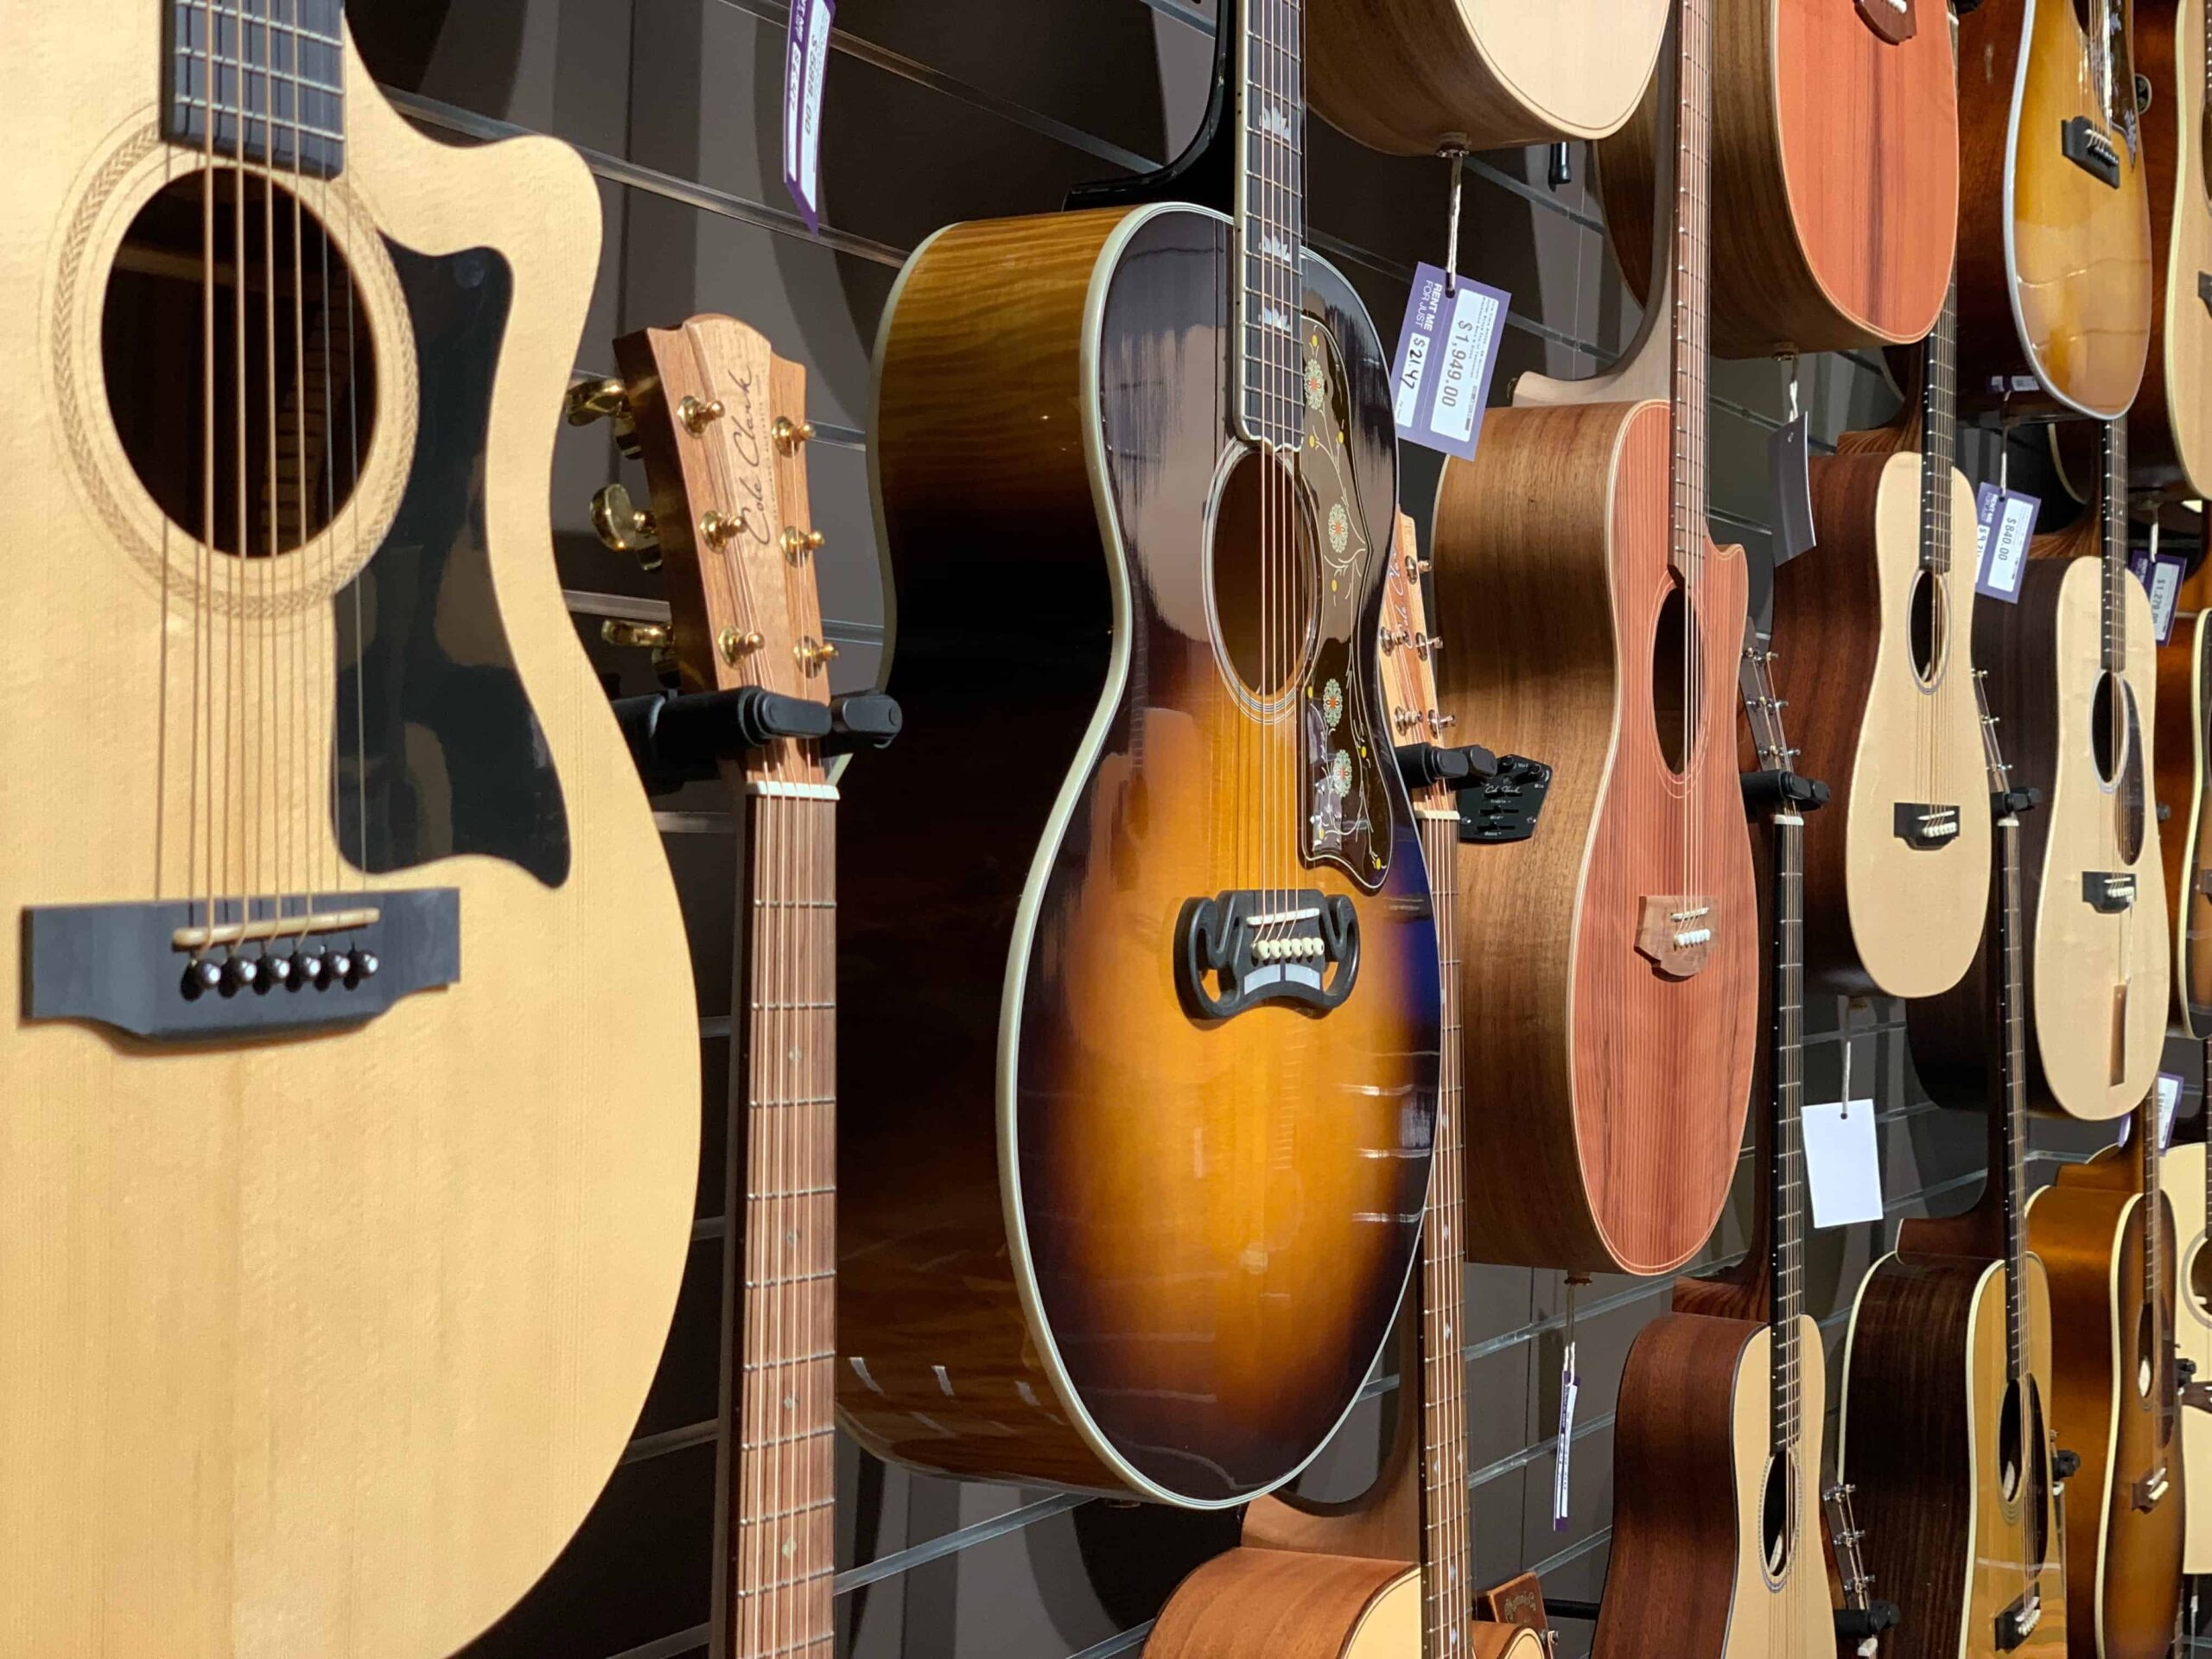 Guitarras acústicas en exhibición en una tienda local de guitarras